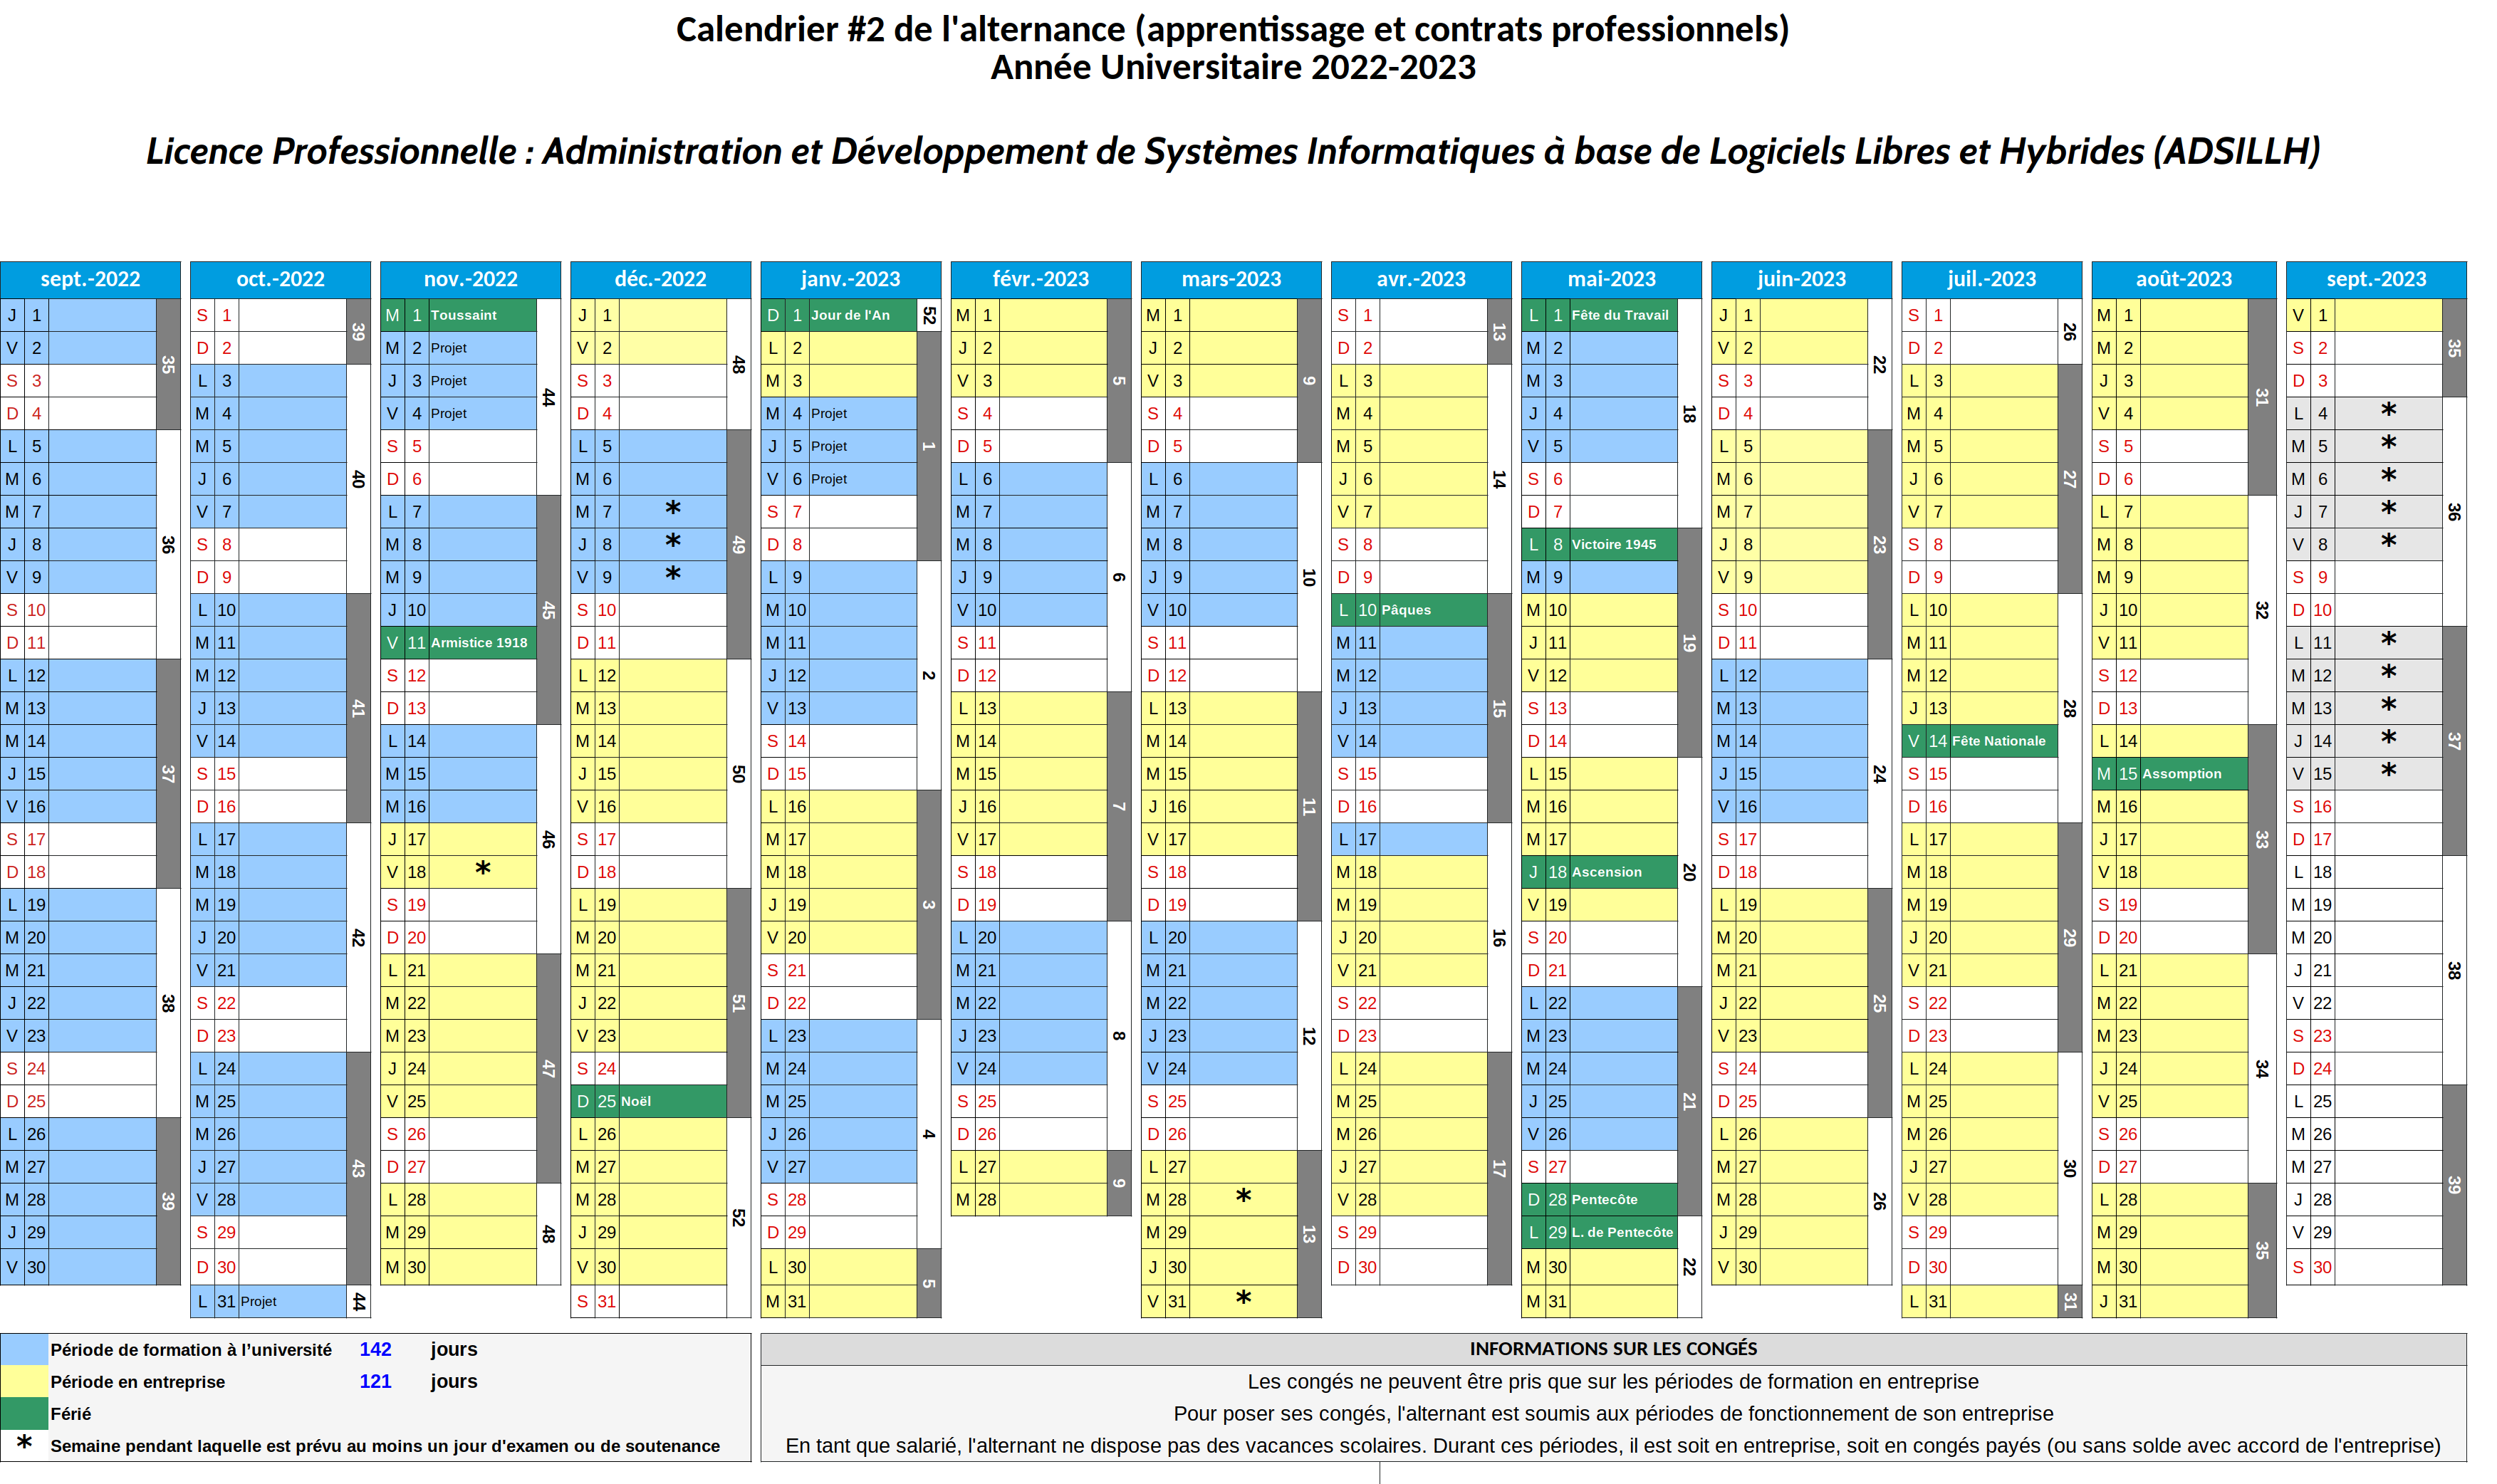 Calendrier prévisionnel (2021-2022) [alternance 2]